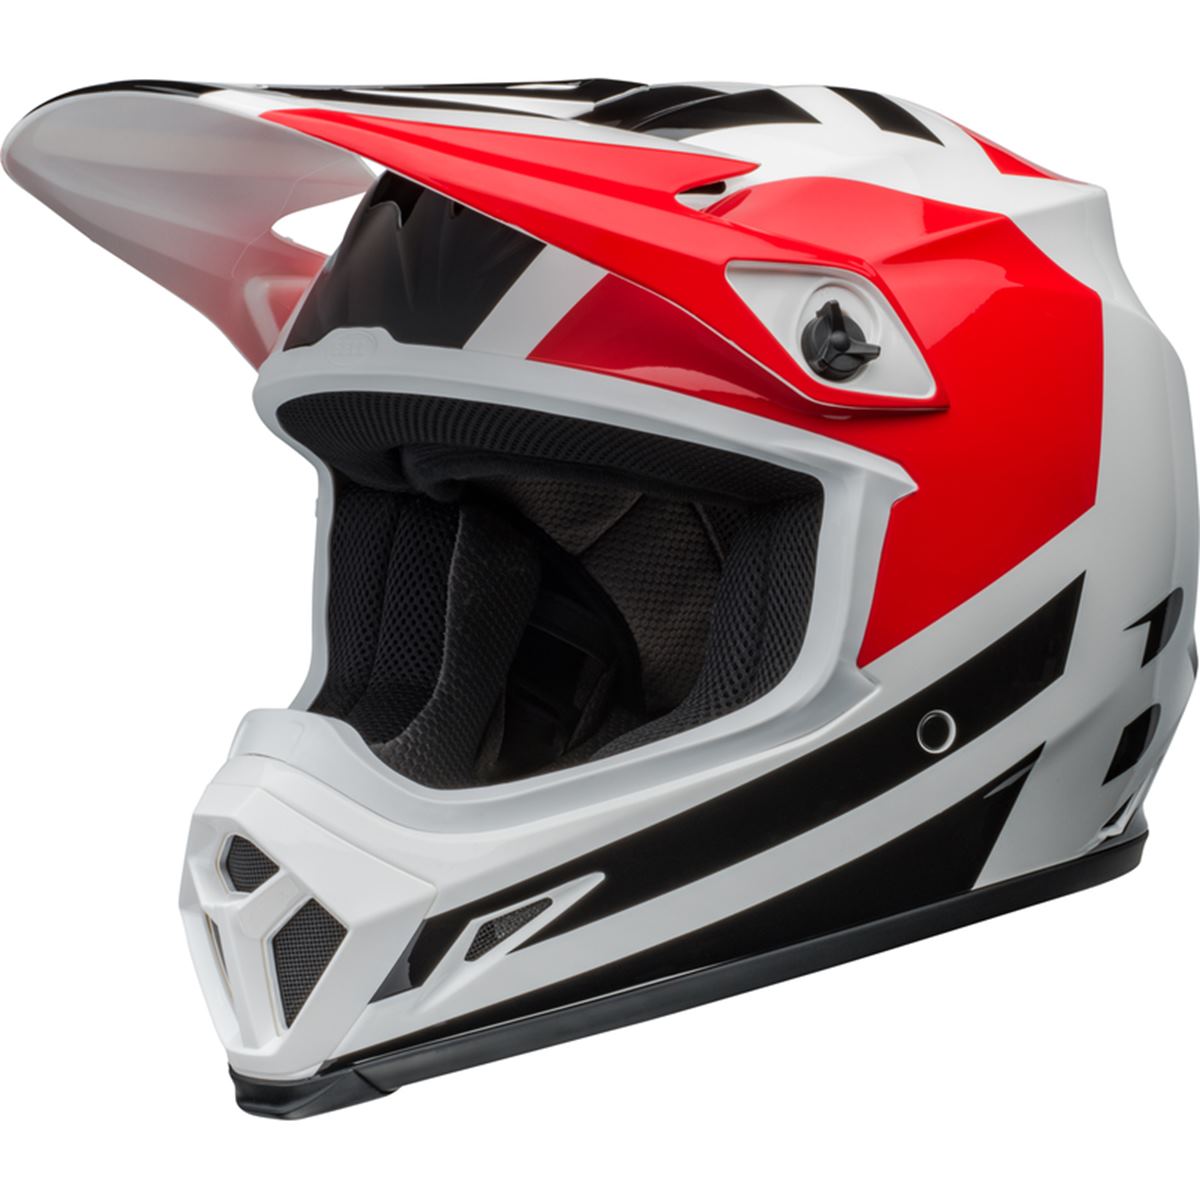 Bell Motocross-Helm MX-9 Mips Alter Ego - Rot